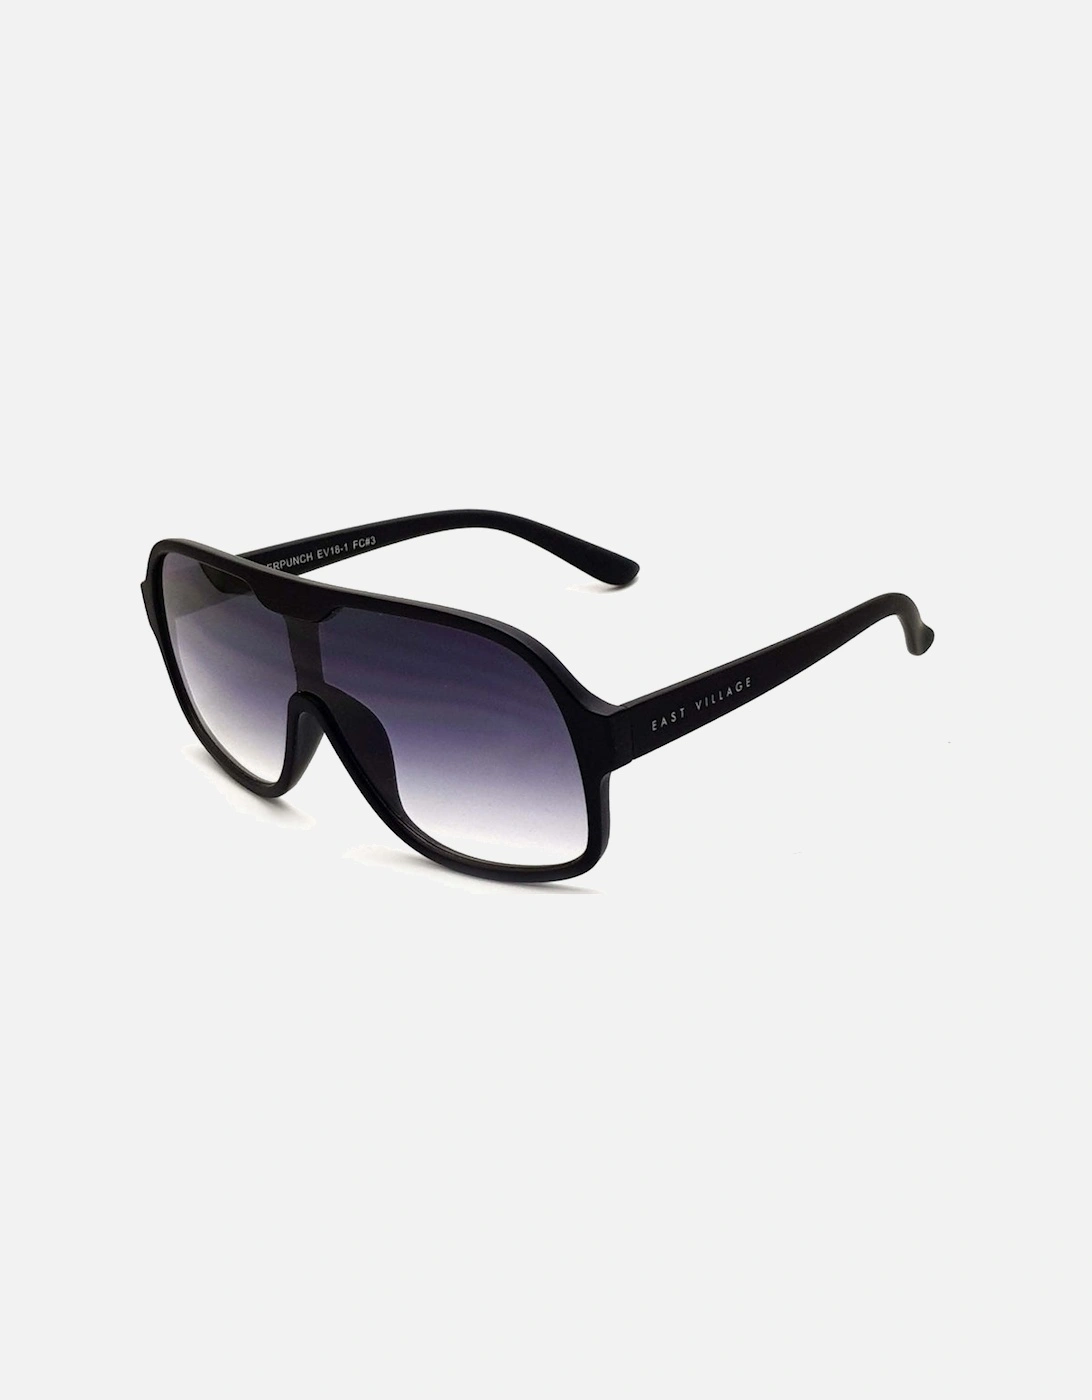 'Suckerpunch' Sunglasses Matt Black With Gradiated Smoke Lens, 2 of 1